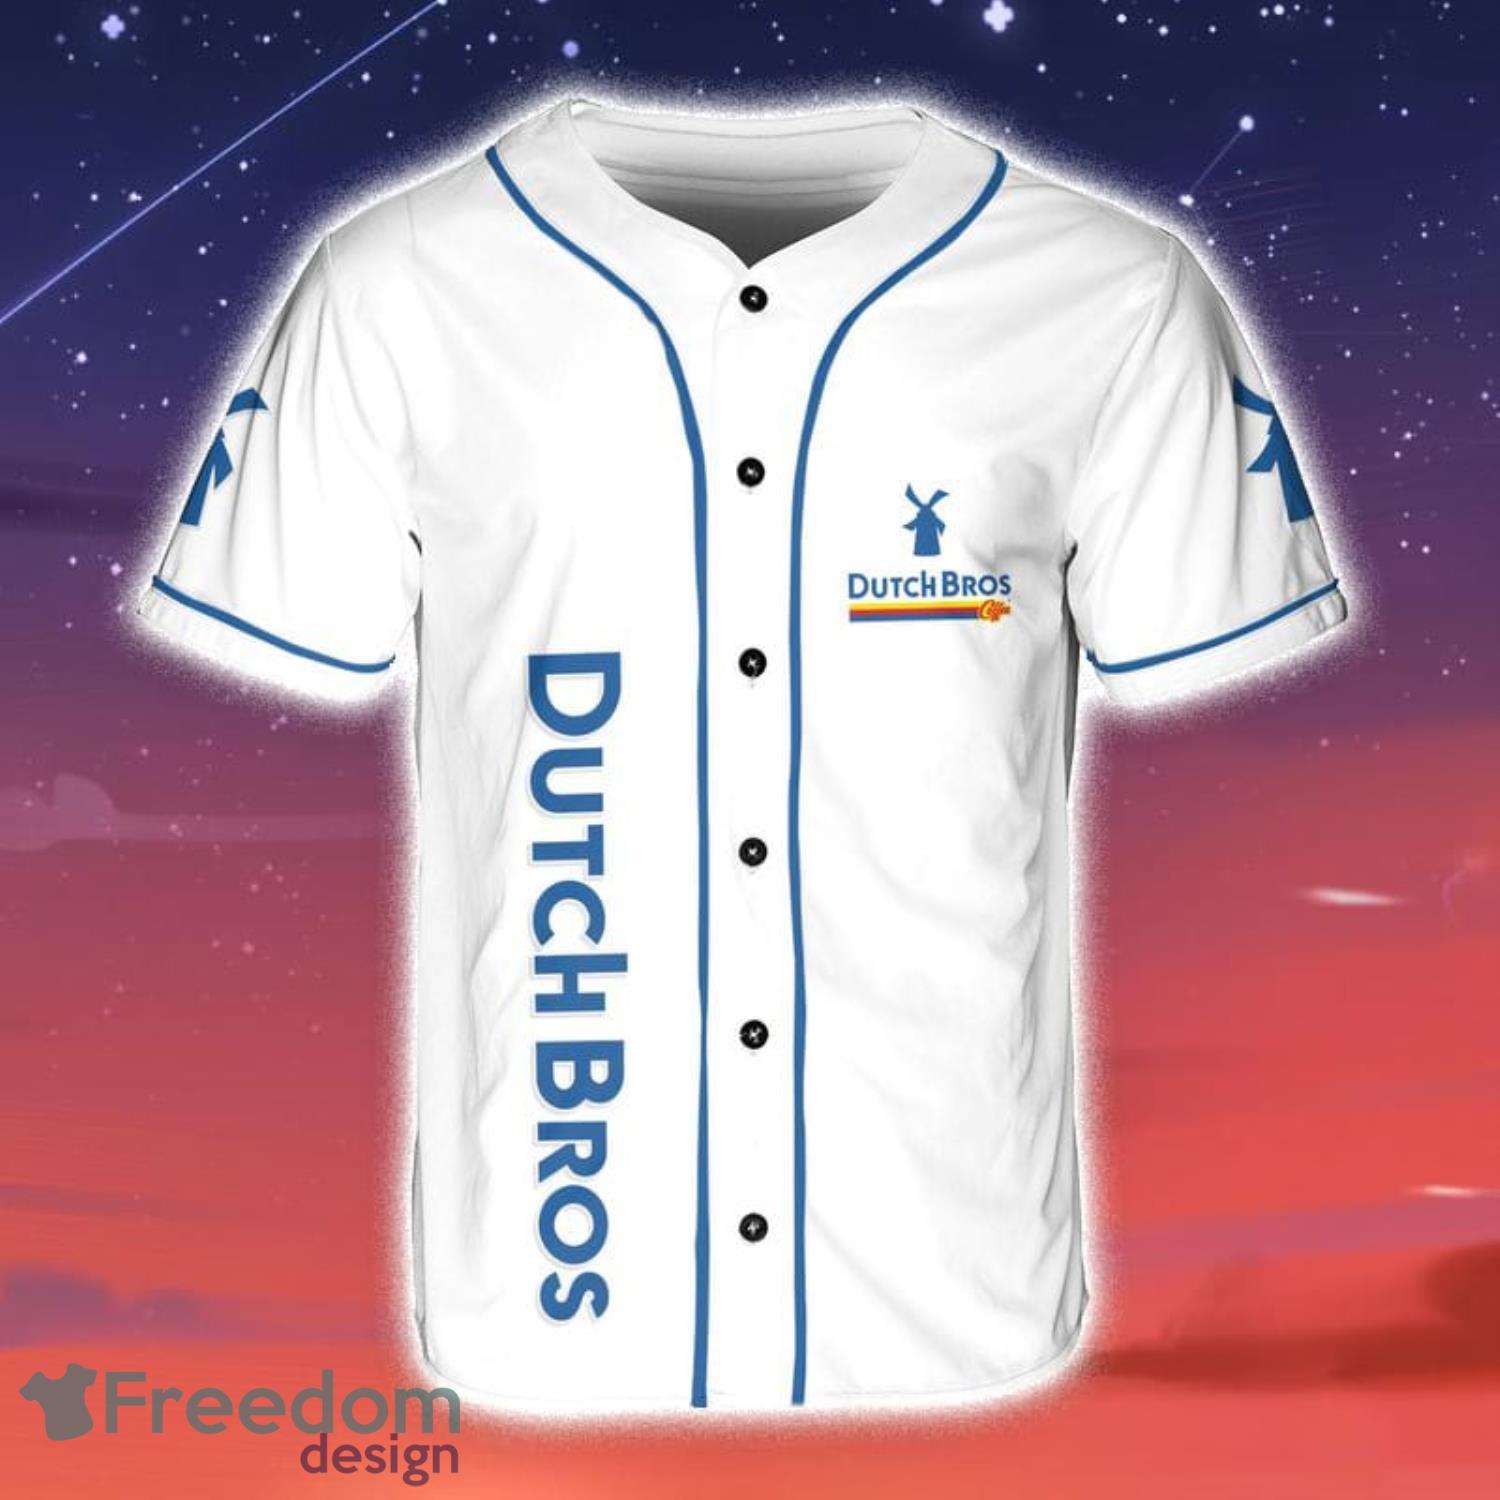 Dutch Bros Coffee Baseball Jersey Shirt Summer Gift For Sport Fans